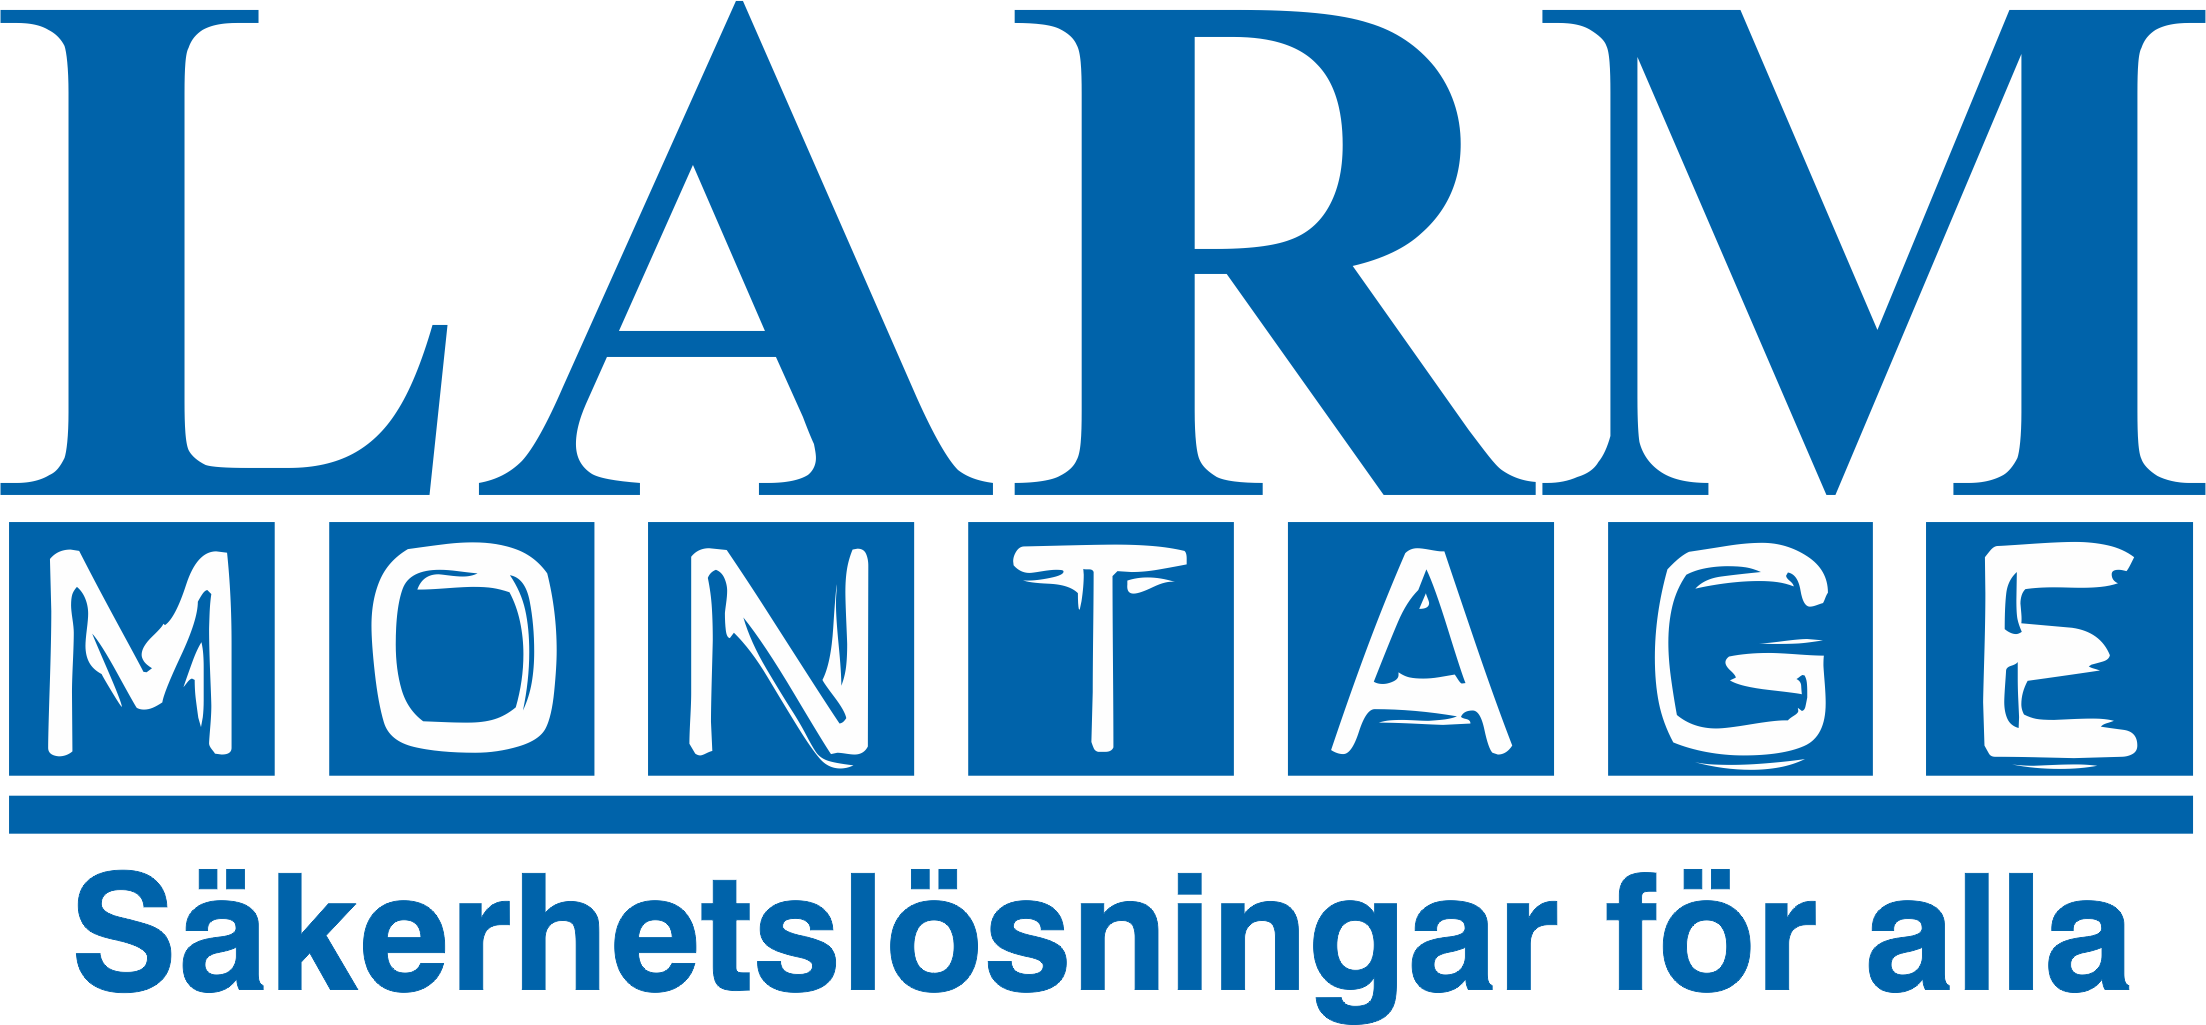 Larmmotange logo